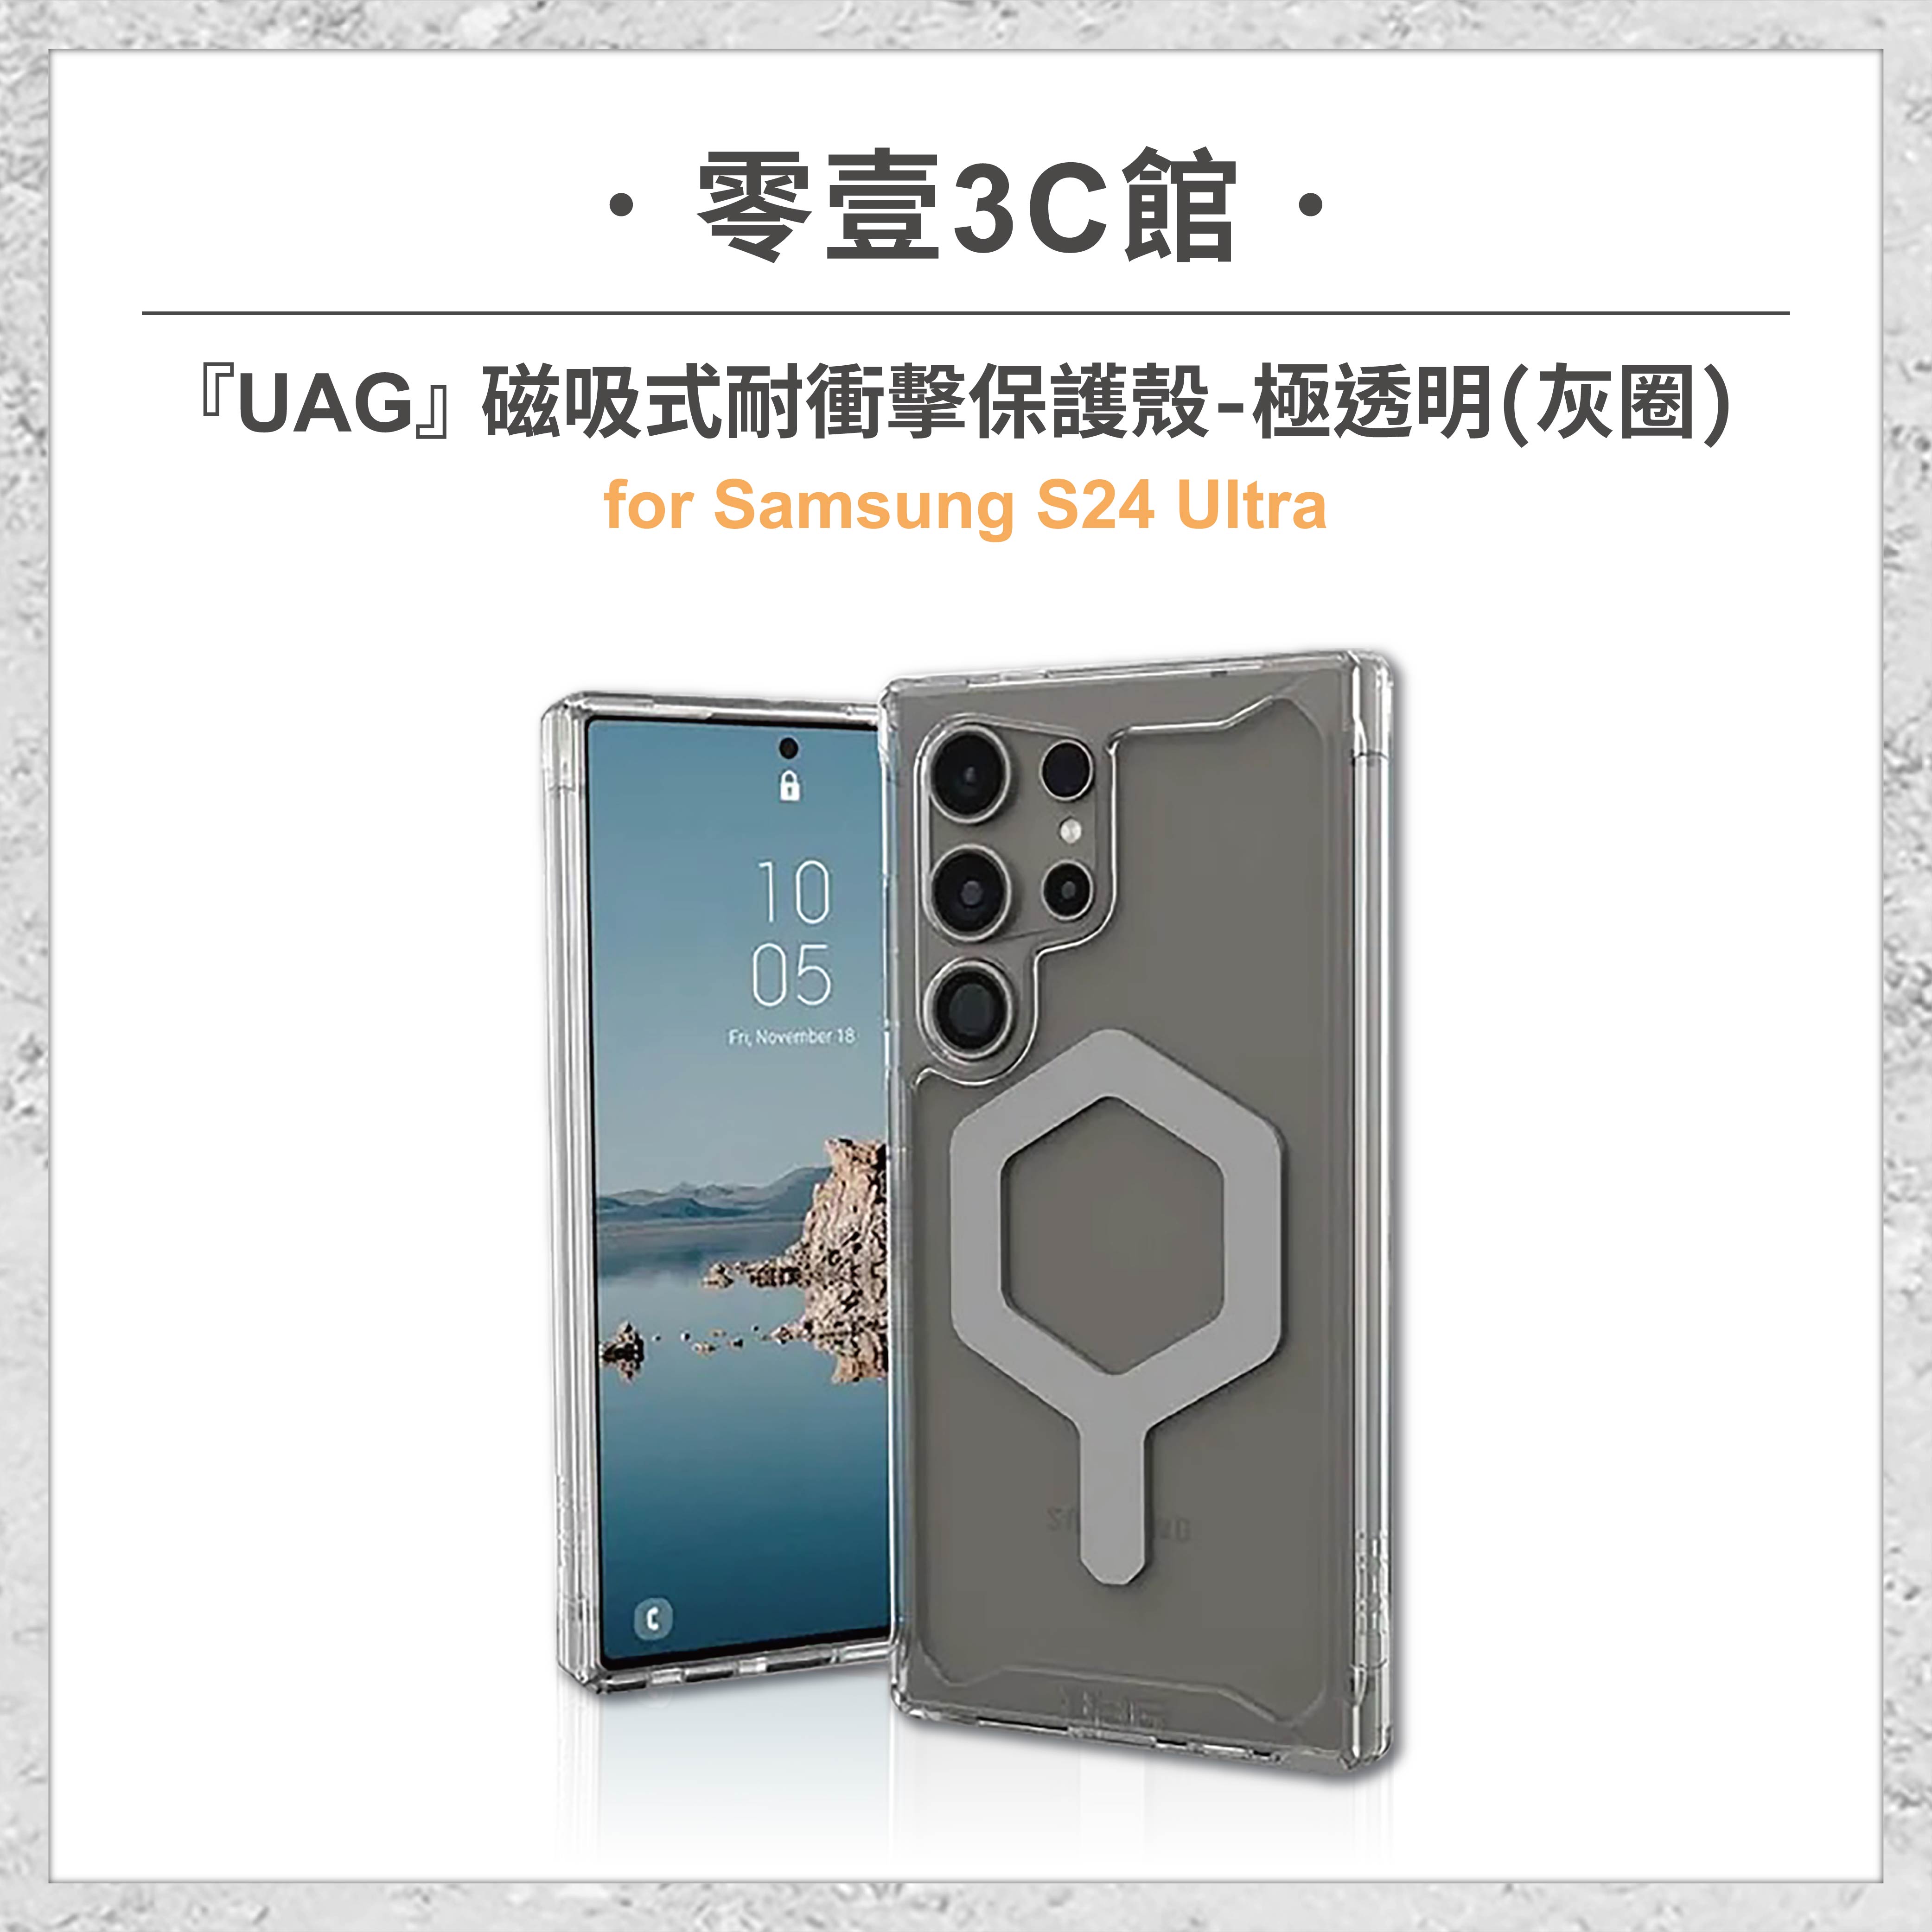 『UAG』磁吸式耐衝擊保護殼-極透明 for Samsung S24 Ultra MagSafe磁吸式手機殼 防摔殼